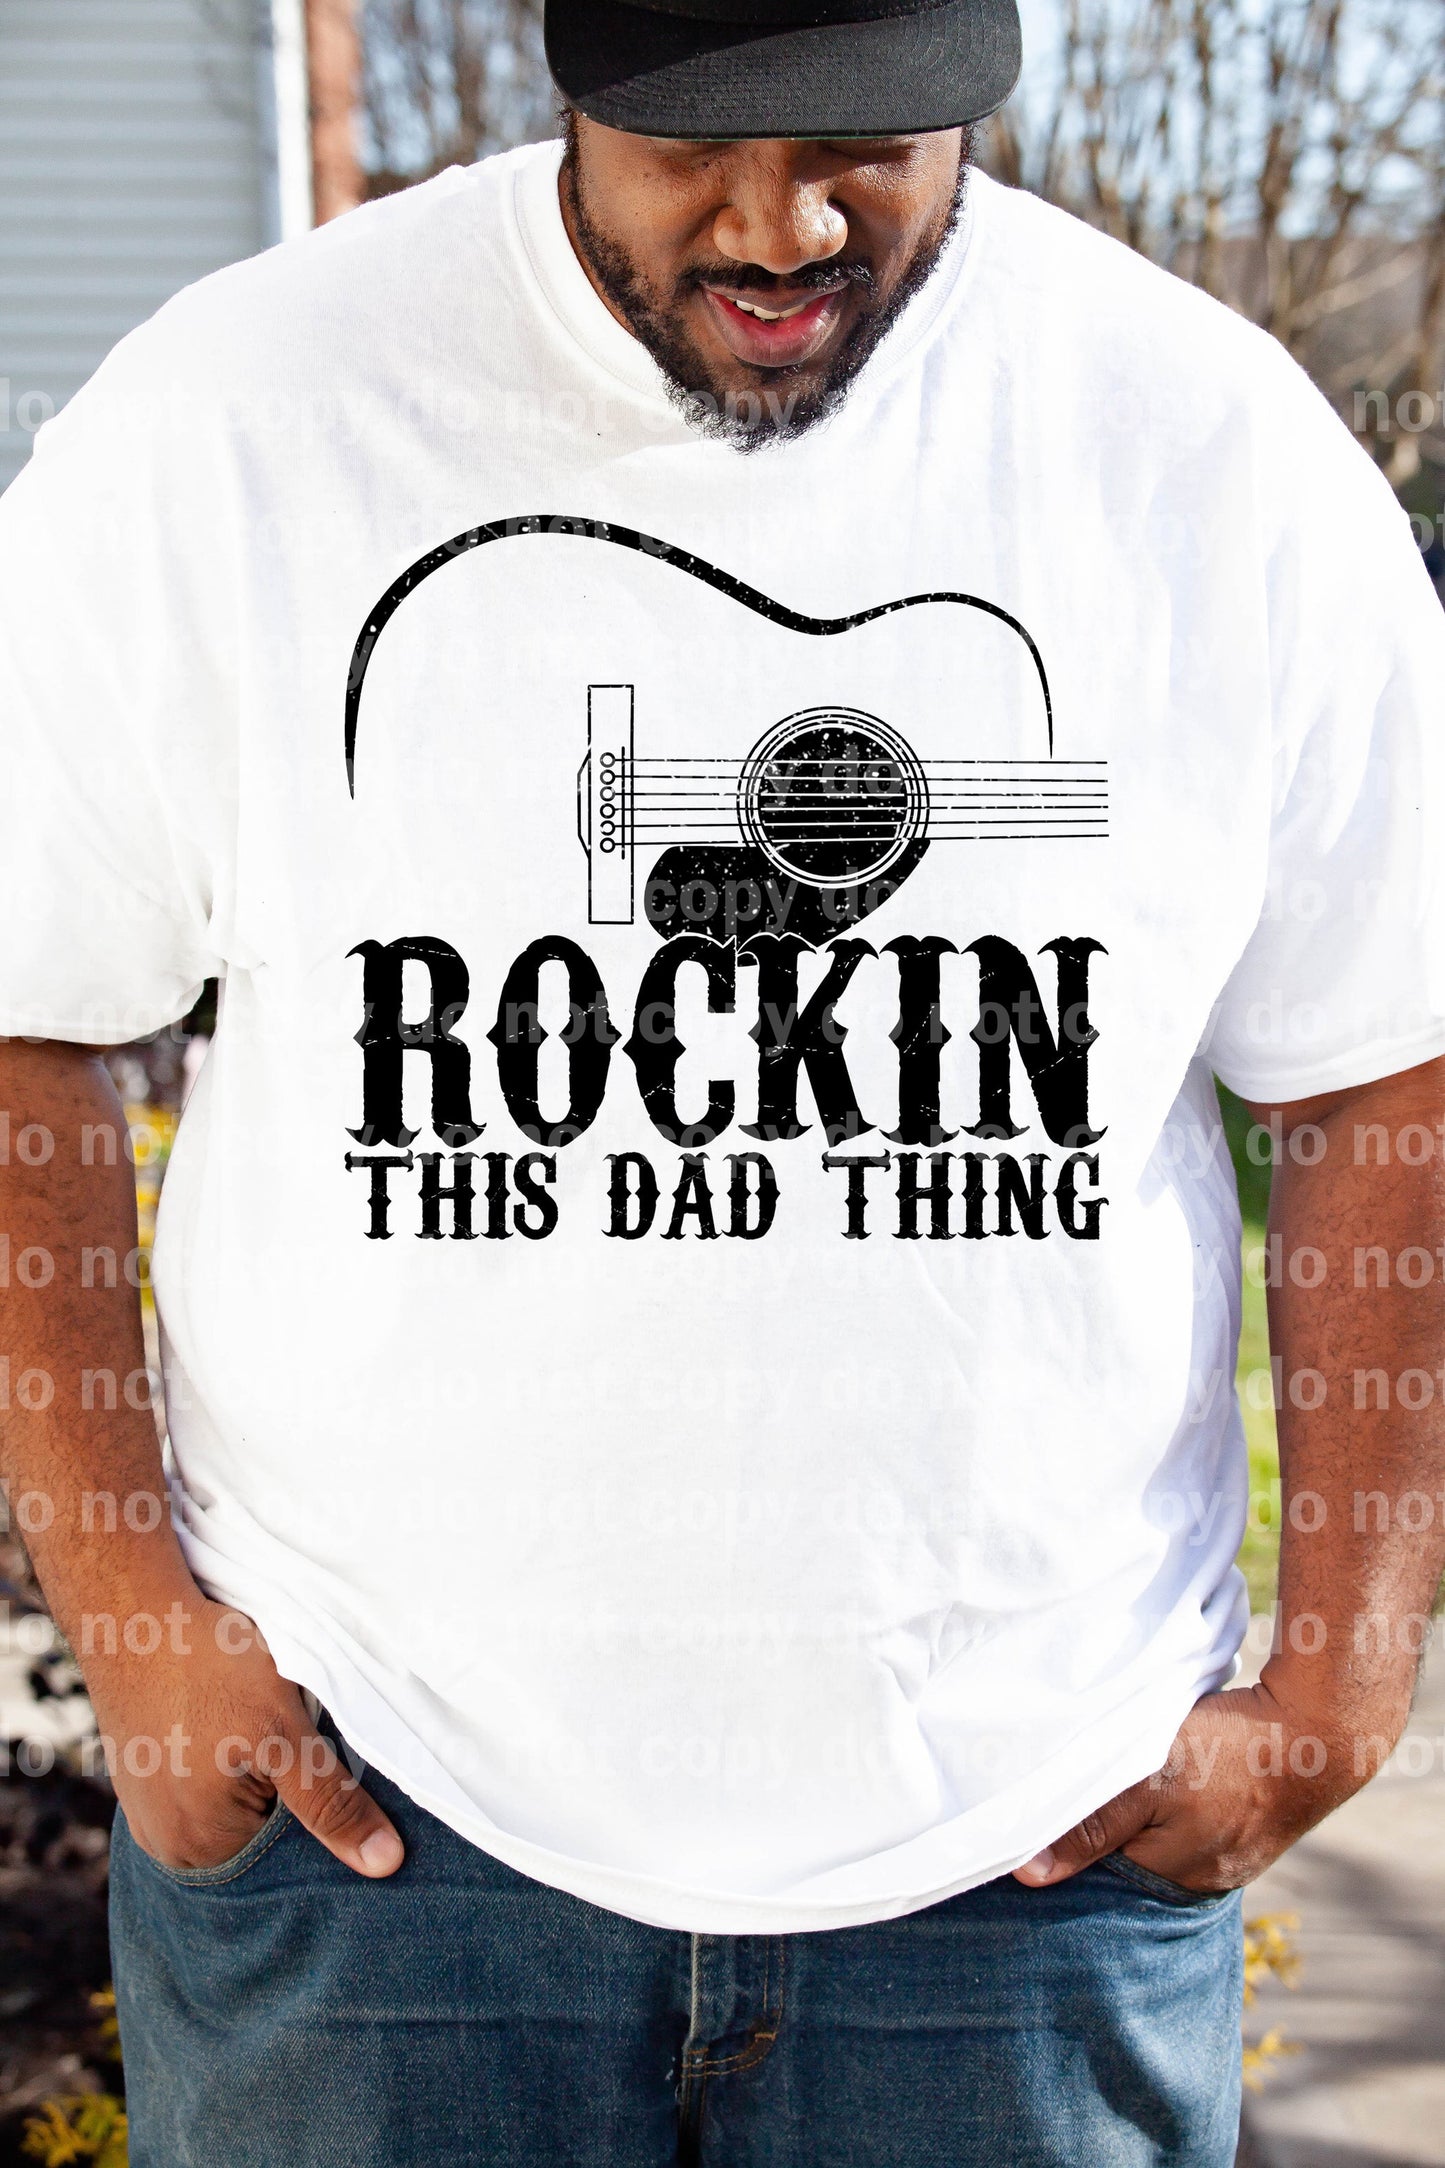 Rockin' This Dad Thing